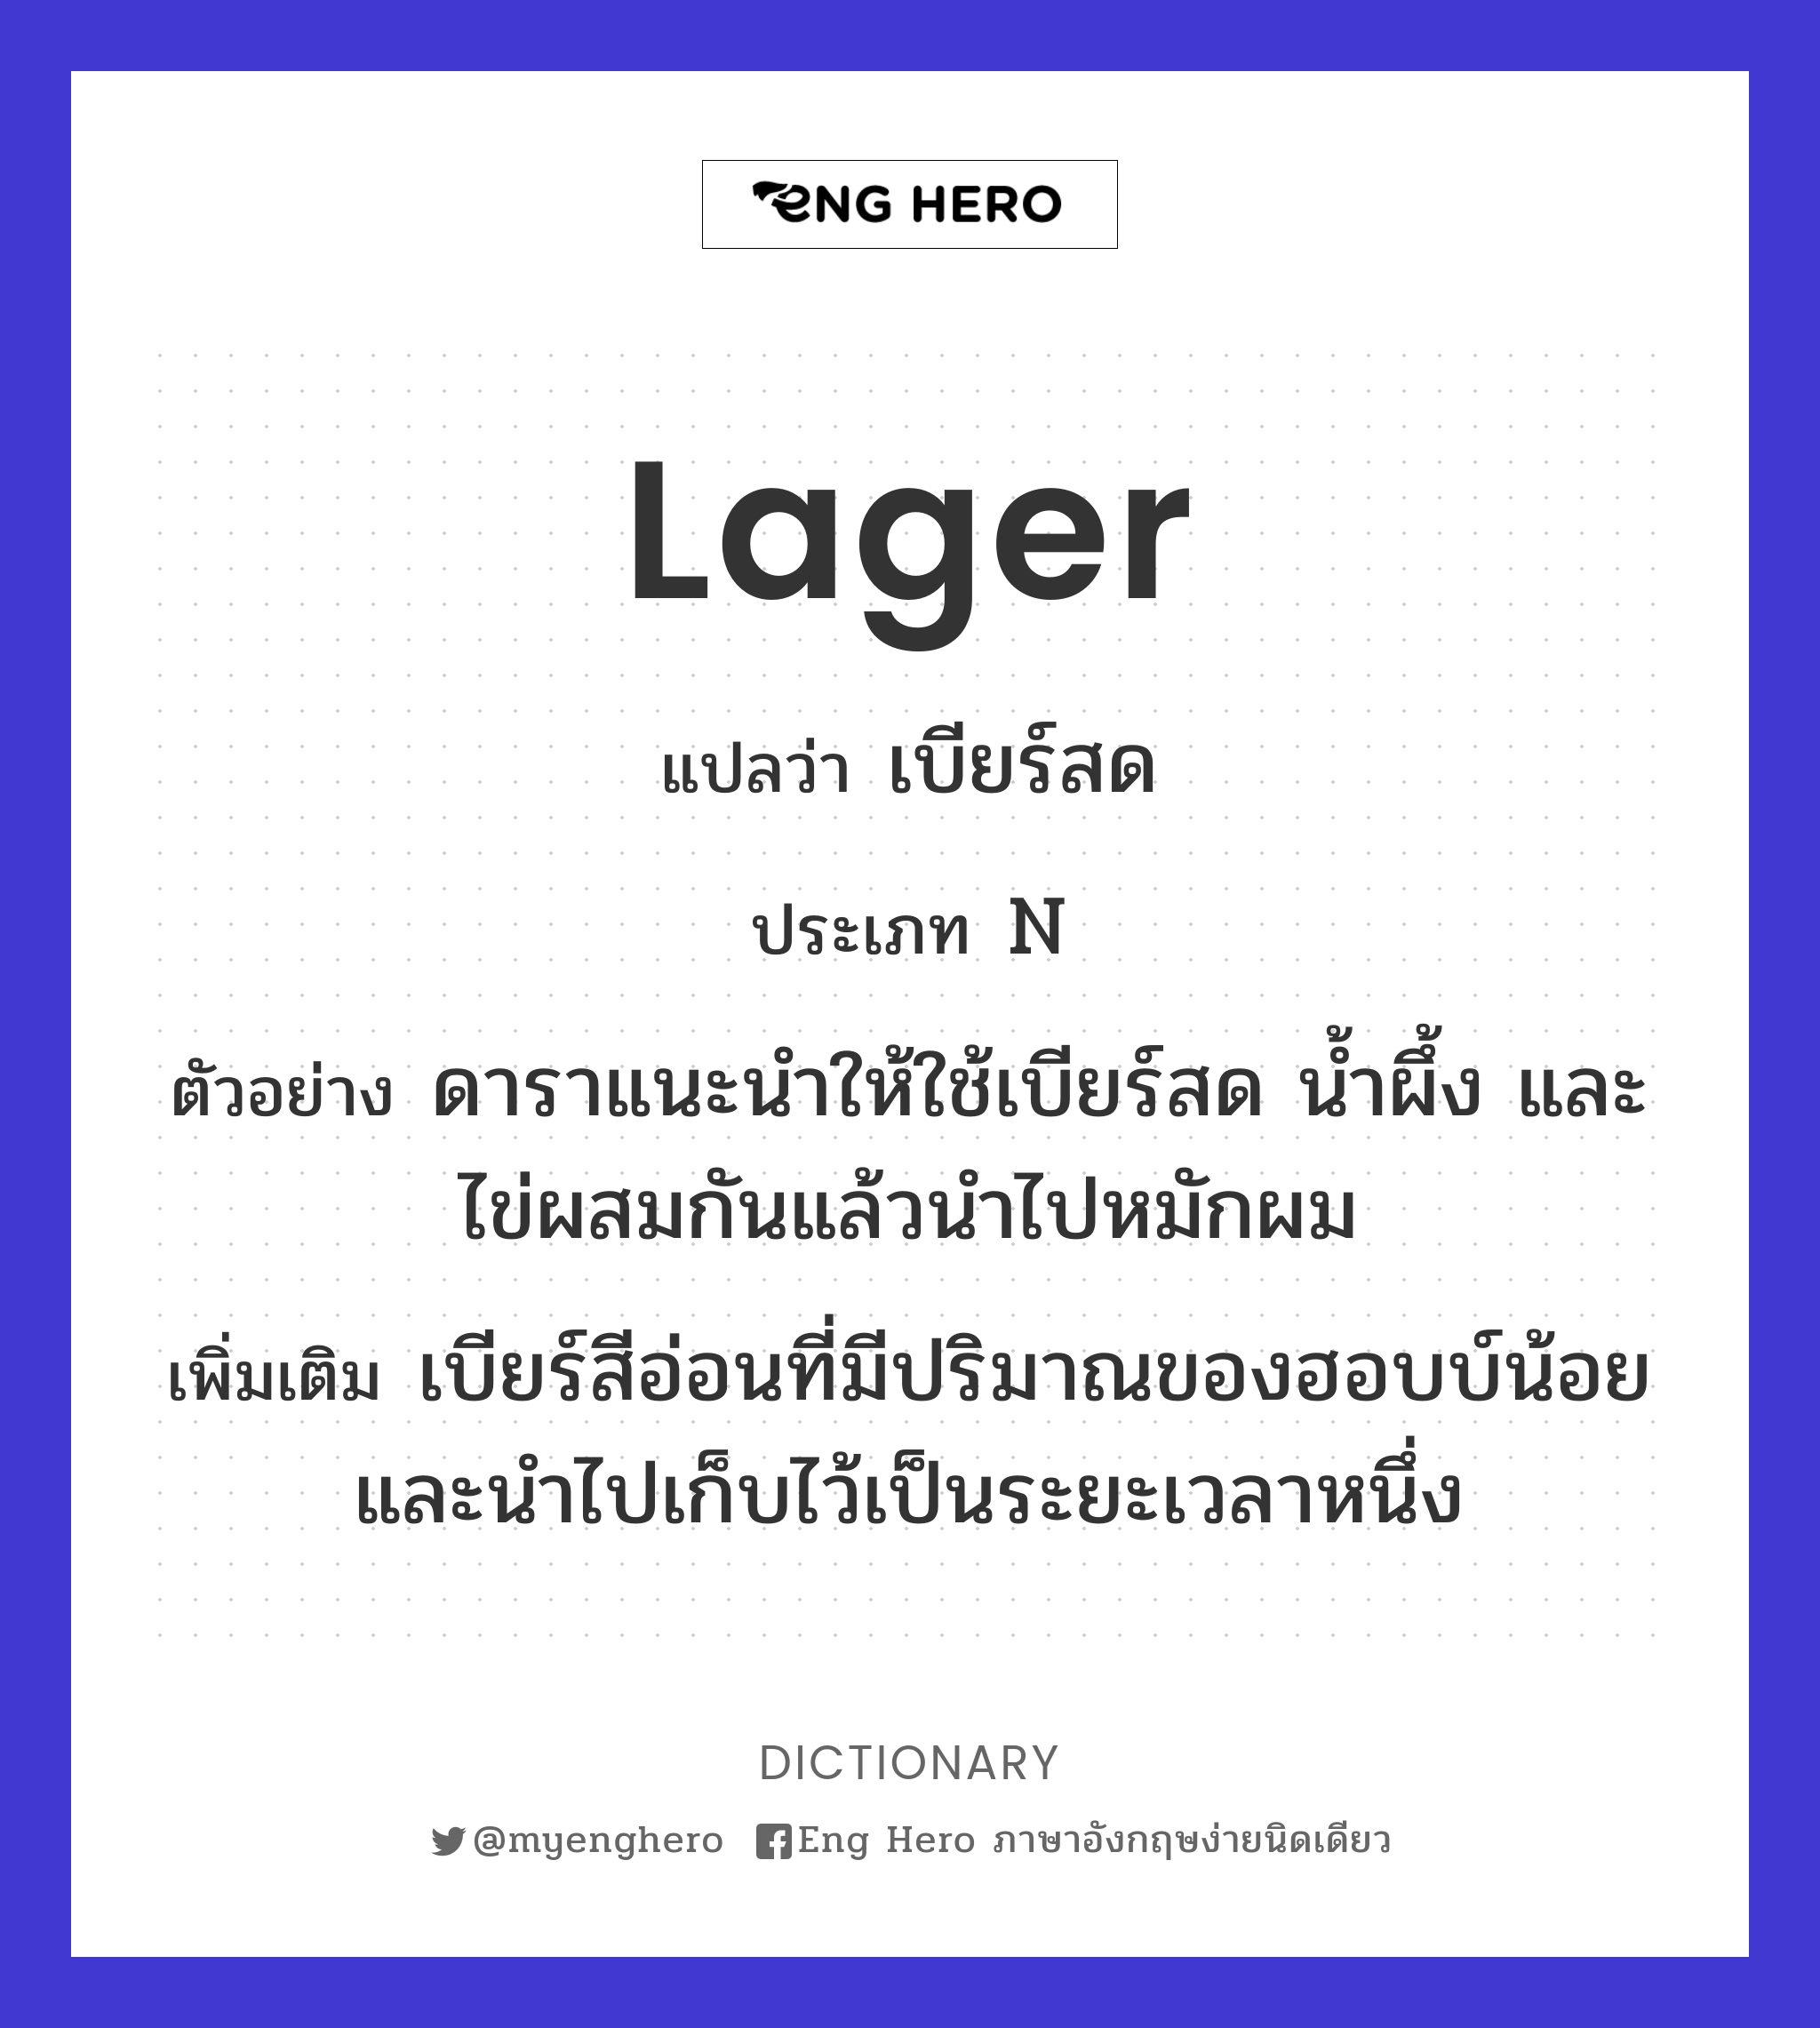 Lager แปลว่า เบียร์ชนิดหนึ่งมีสีอ่อน มีอายุประมาณ 6 อาทิตย์ถึง 6 เดือน |  Eng Hero เรียนภาษาอังกฤษ ออนไลน์ ฟรี